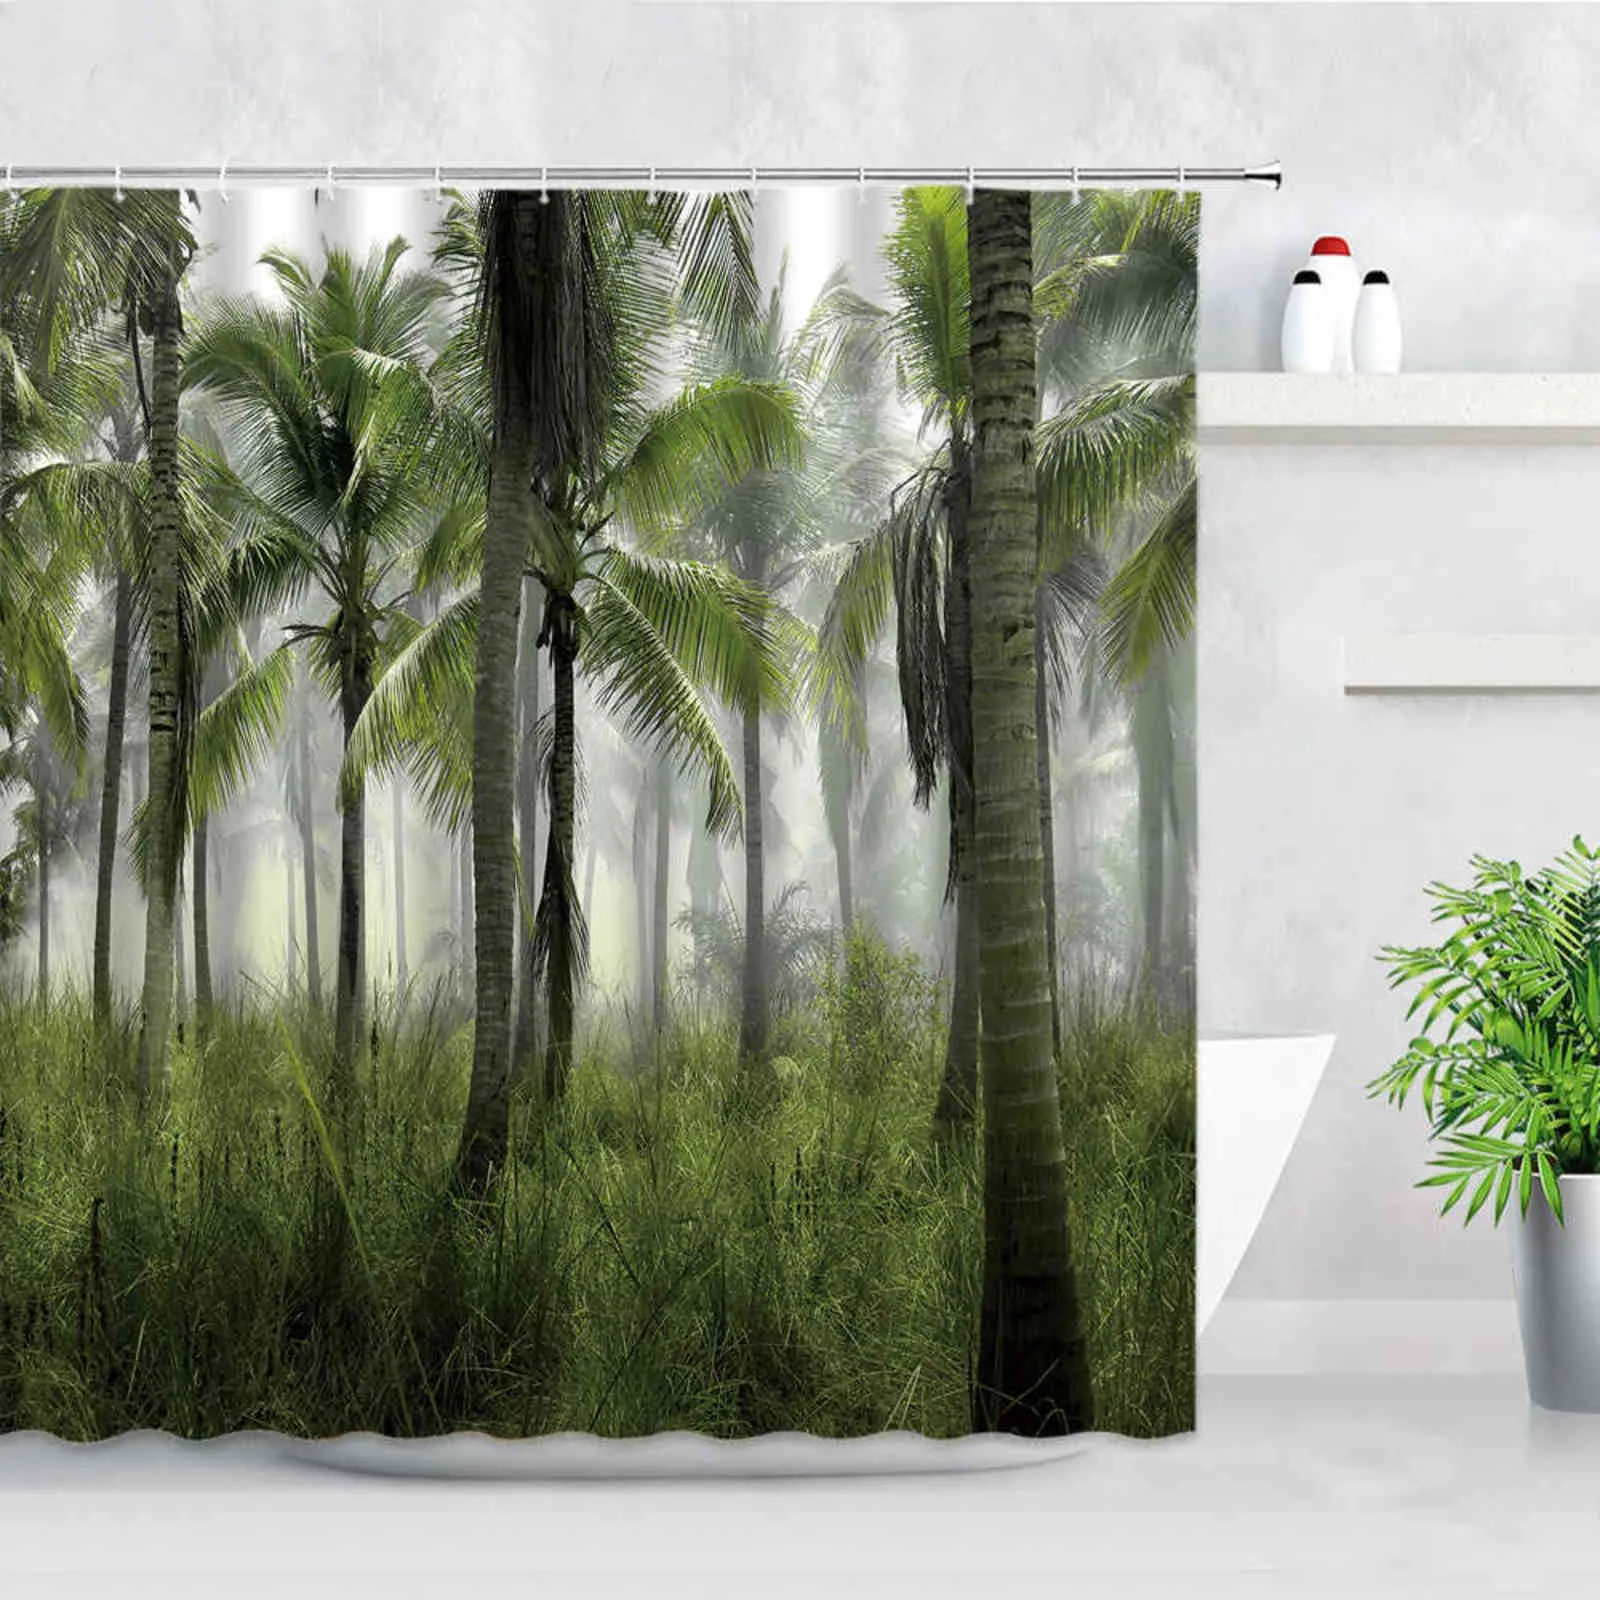 열 대 식물 풍경 샤워 커튼 세트 정글 폭포 팜 리프 코코넛 나무 인쇄 방수 천 화장실 장식 커튼 211116